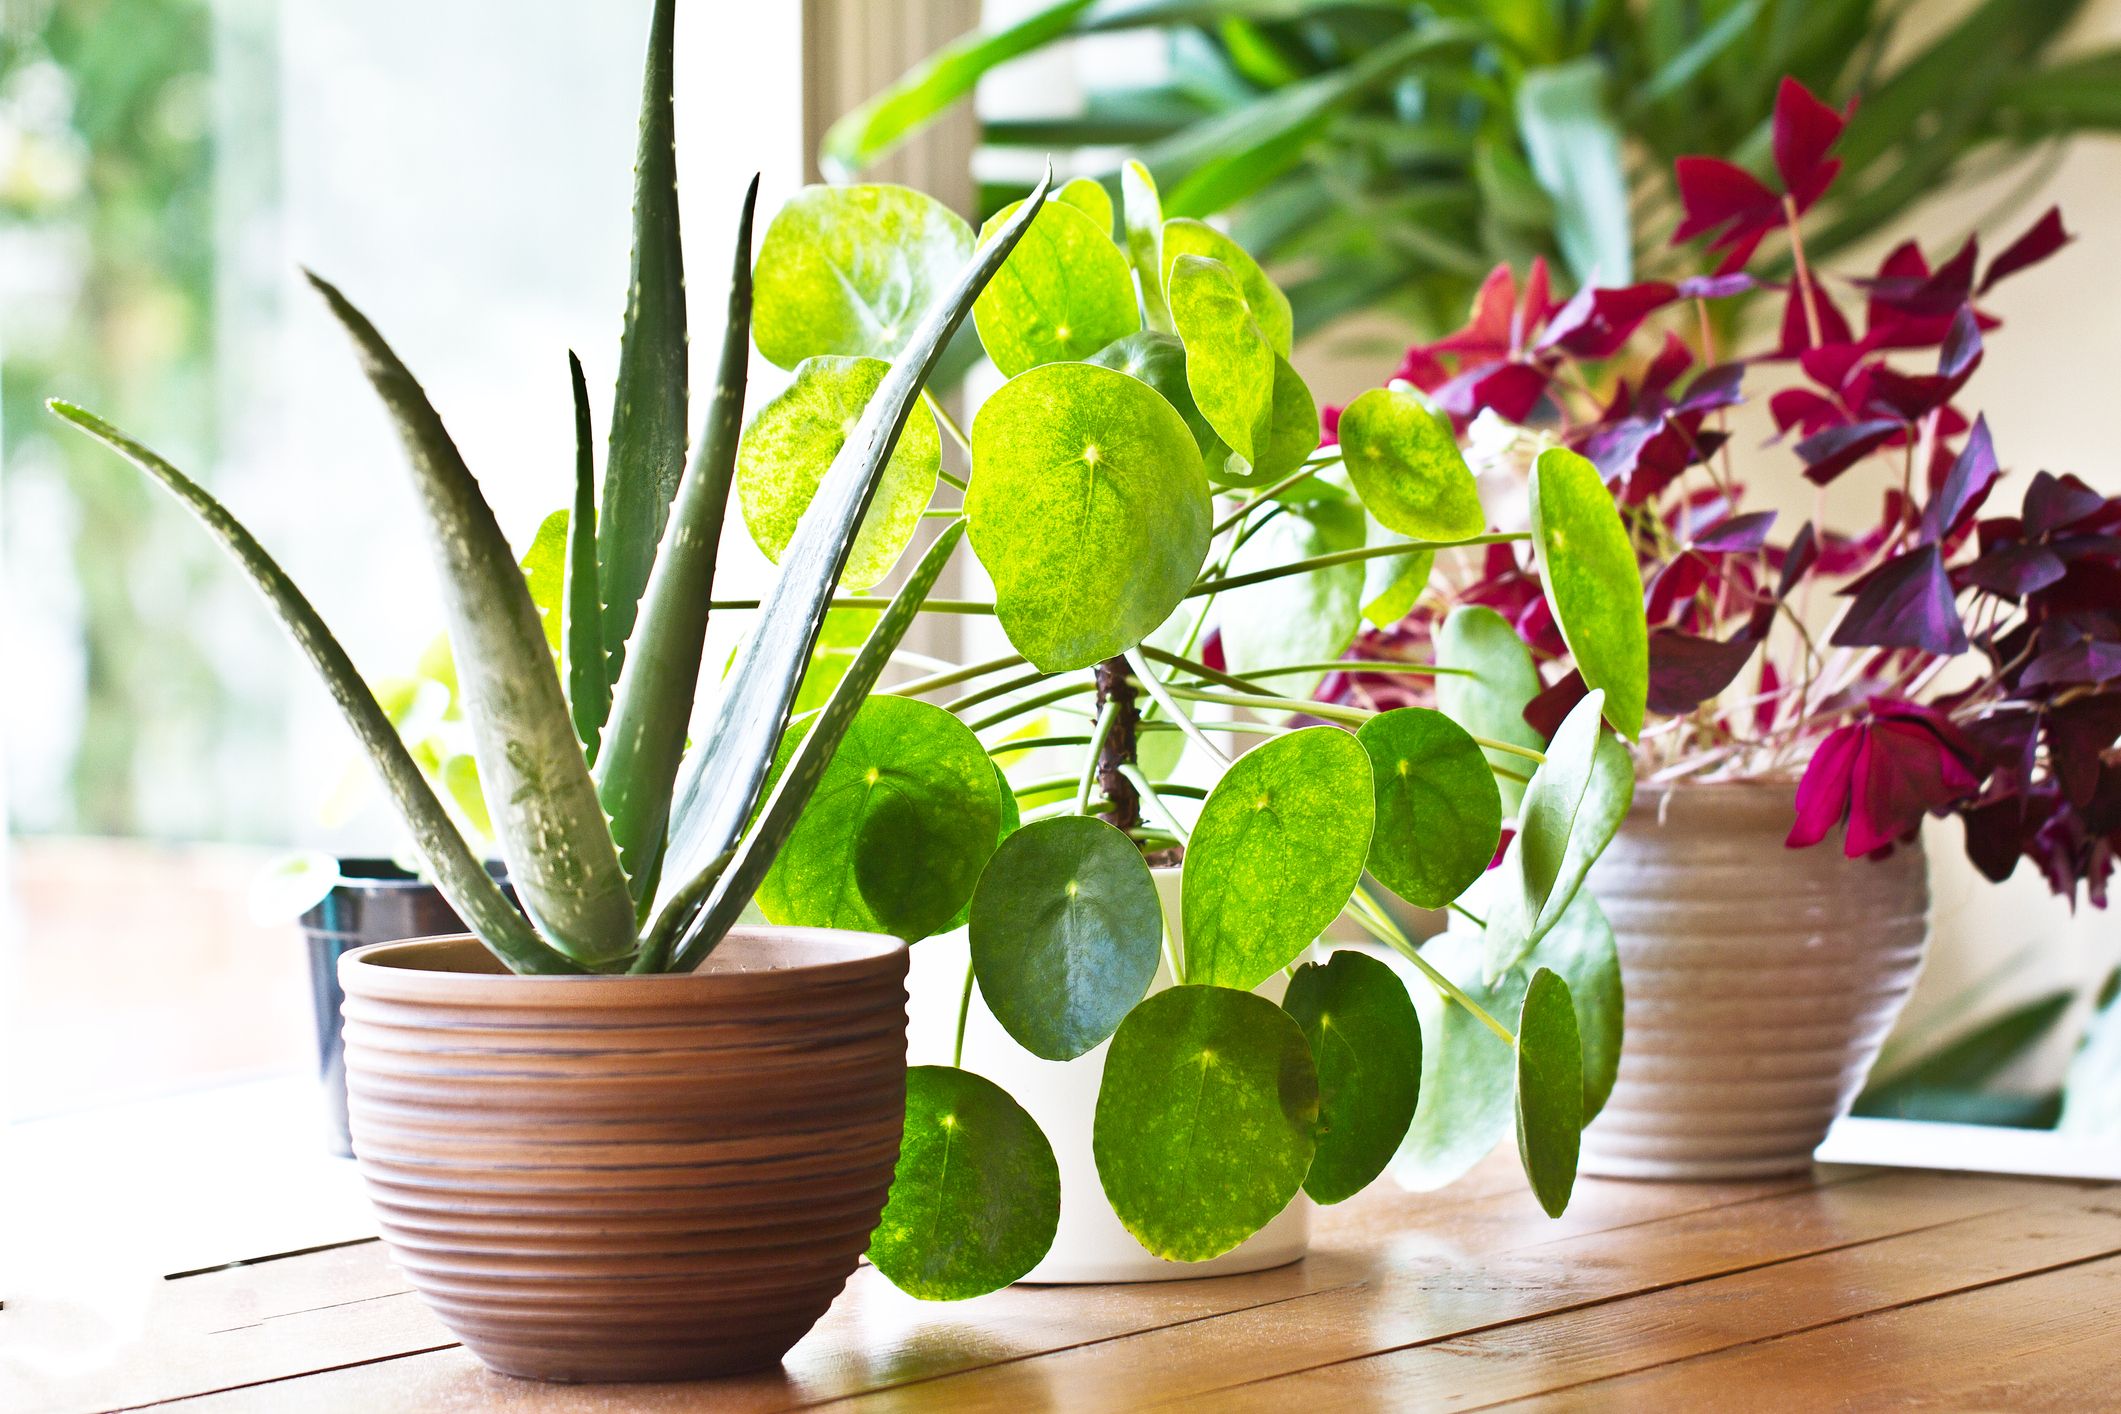 8 Benefits of Indoor Plants – How Houseplants Improve Your Health